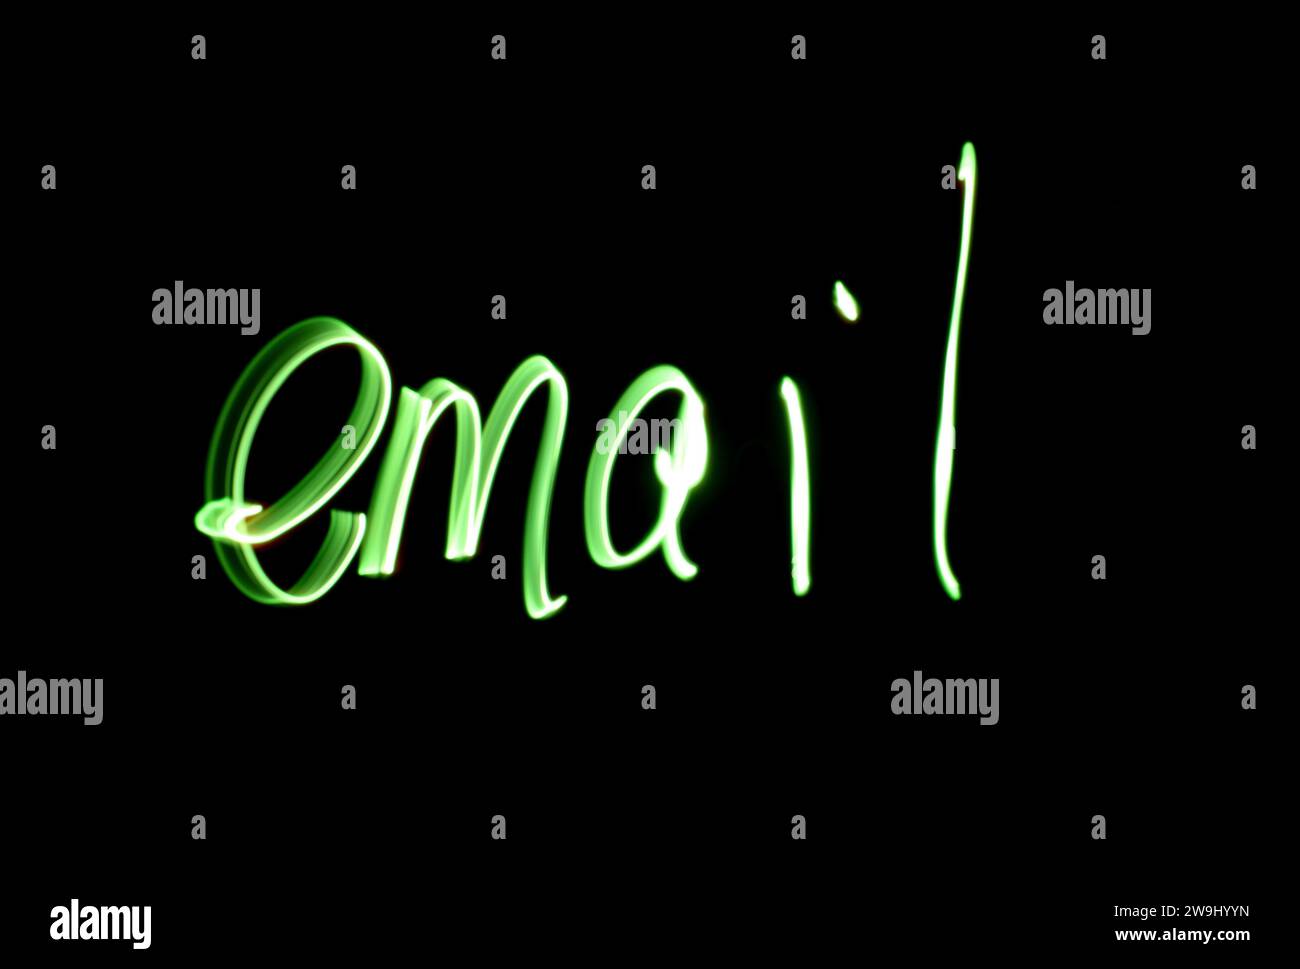 Photographie du mot « e-mail » écrit en lumière verte éclatante sur une photo longue exposition sur fond noir. Photographie de peinture légère Banque D'Images